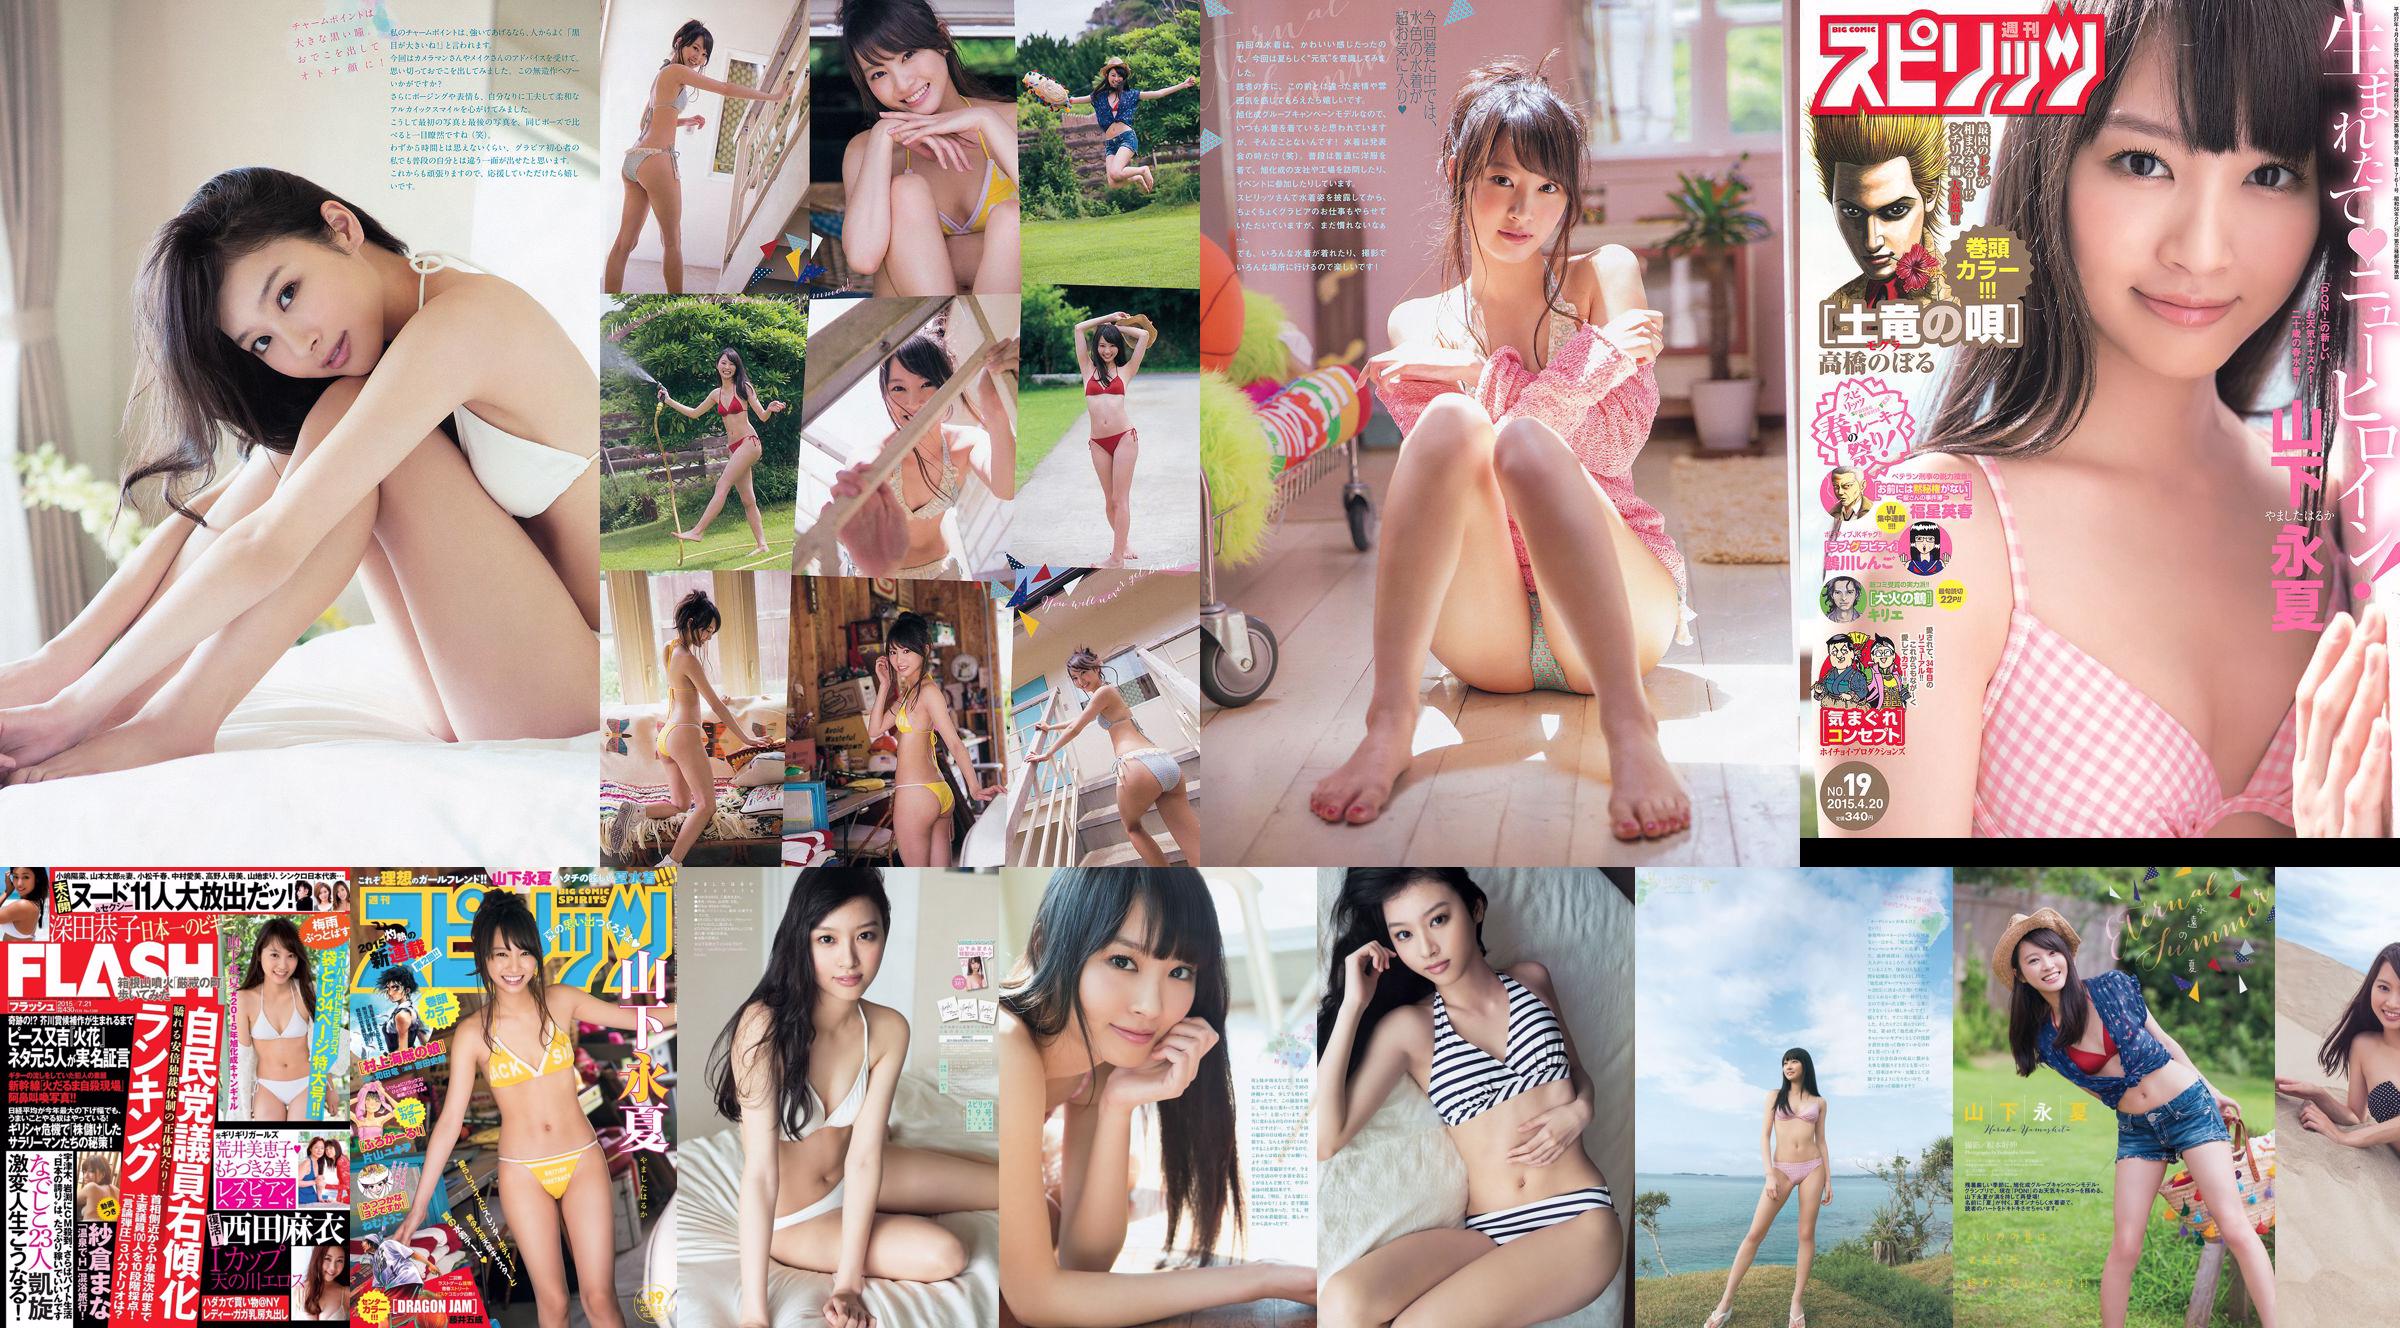 [FLASH] Haruka Yamashita Kyoko Fukada Mai Nishida Rumi Mochizuki Mieko Arai Mana Sakura Fumina Suzuki 2015.07.21 Photo Mitsushi No.f7f551 Page 1